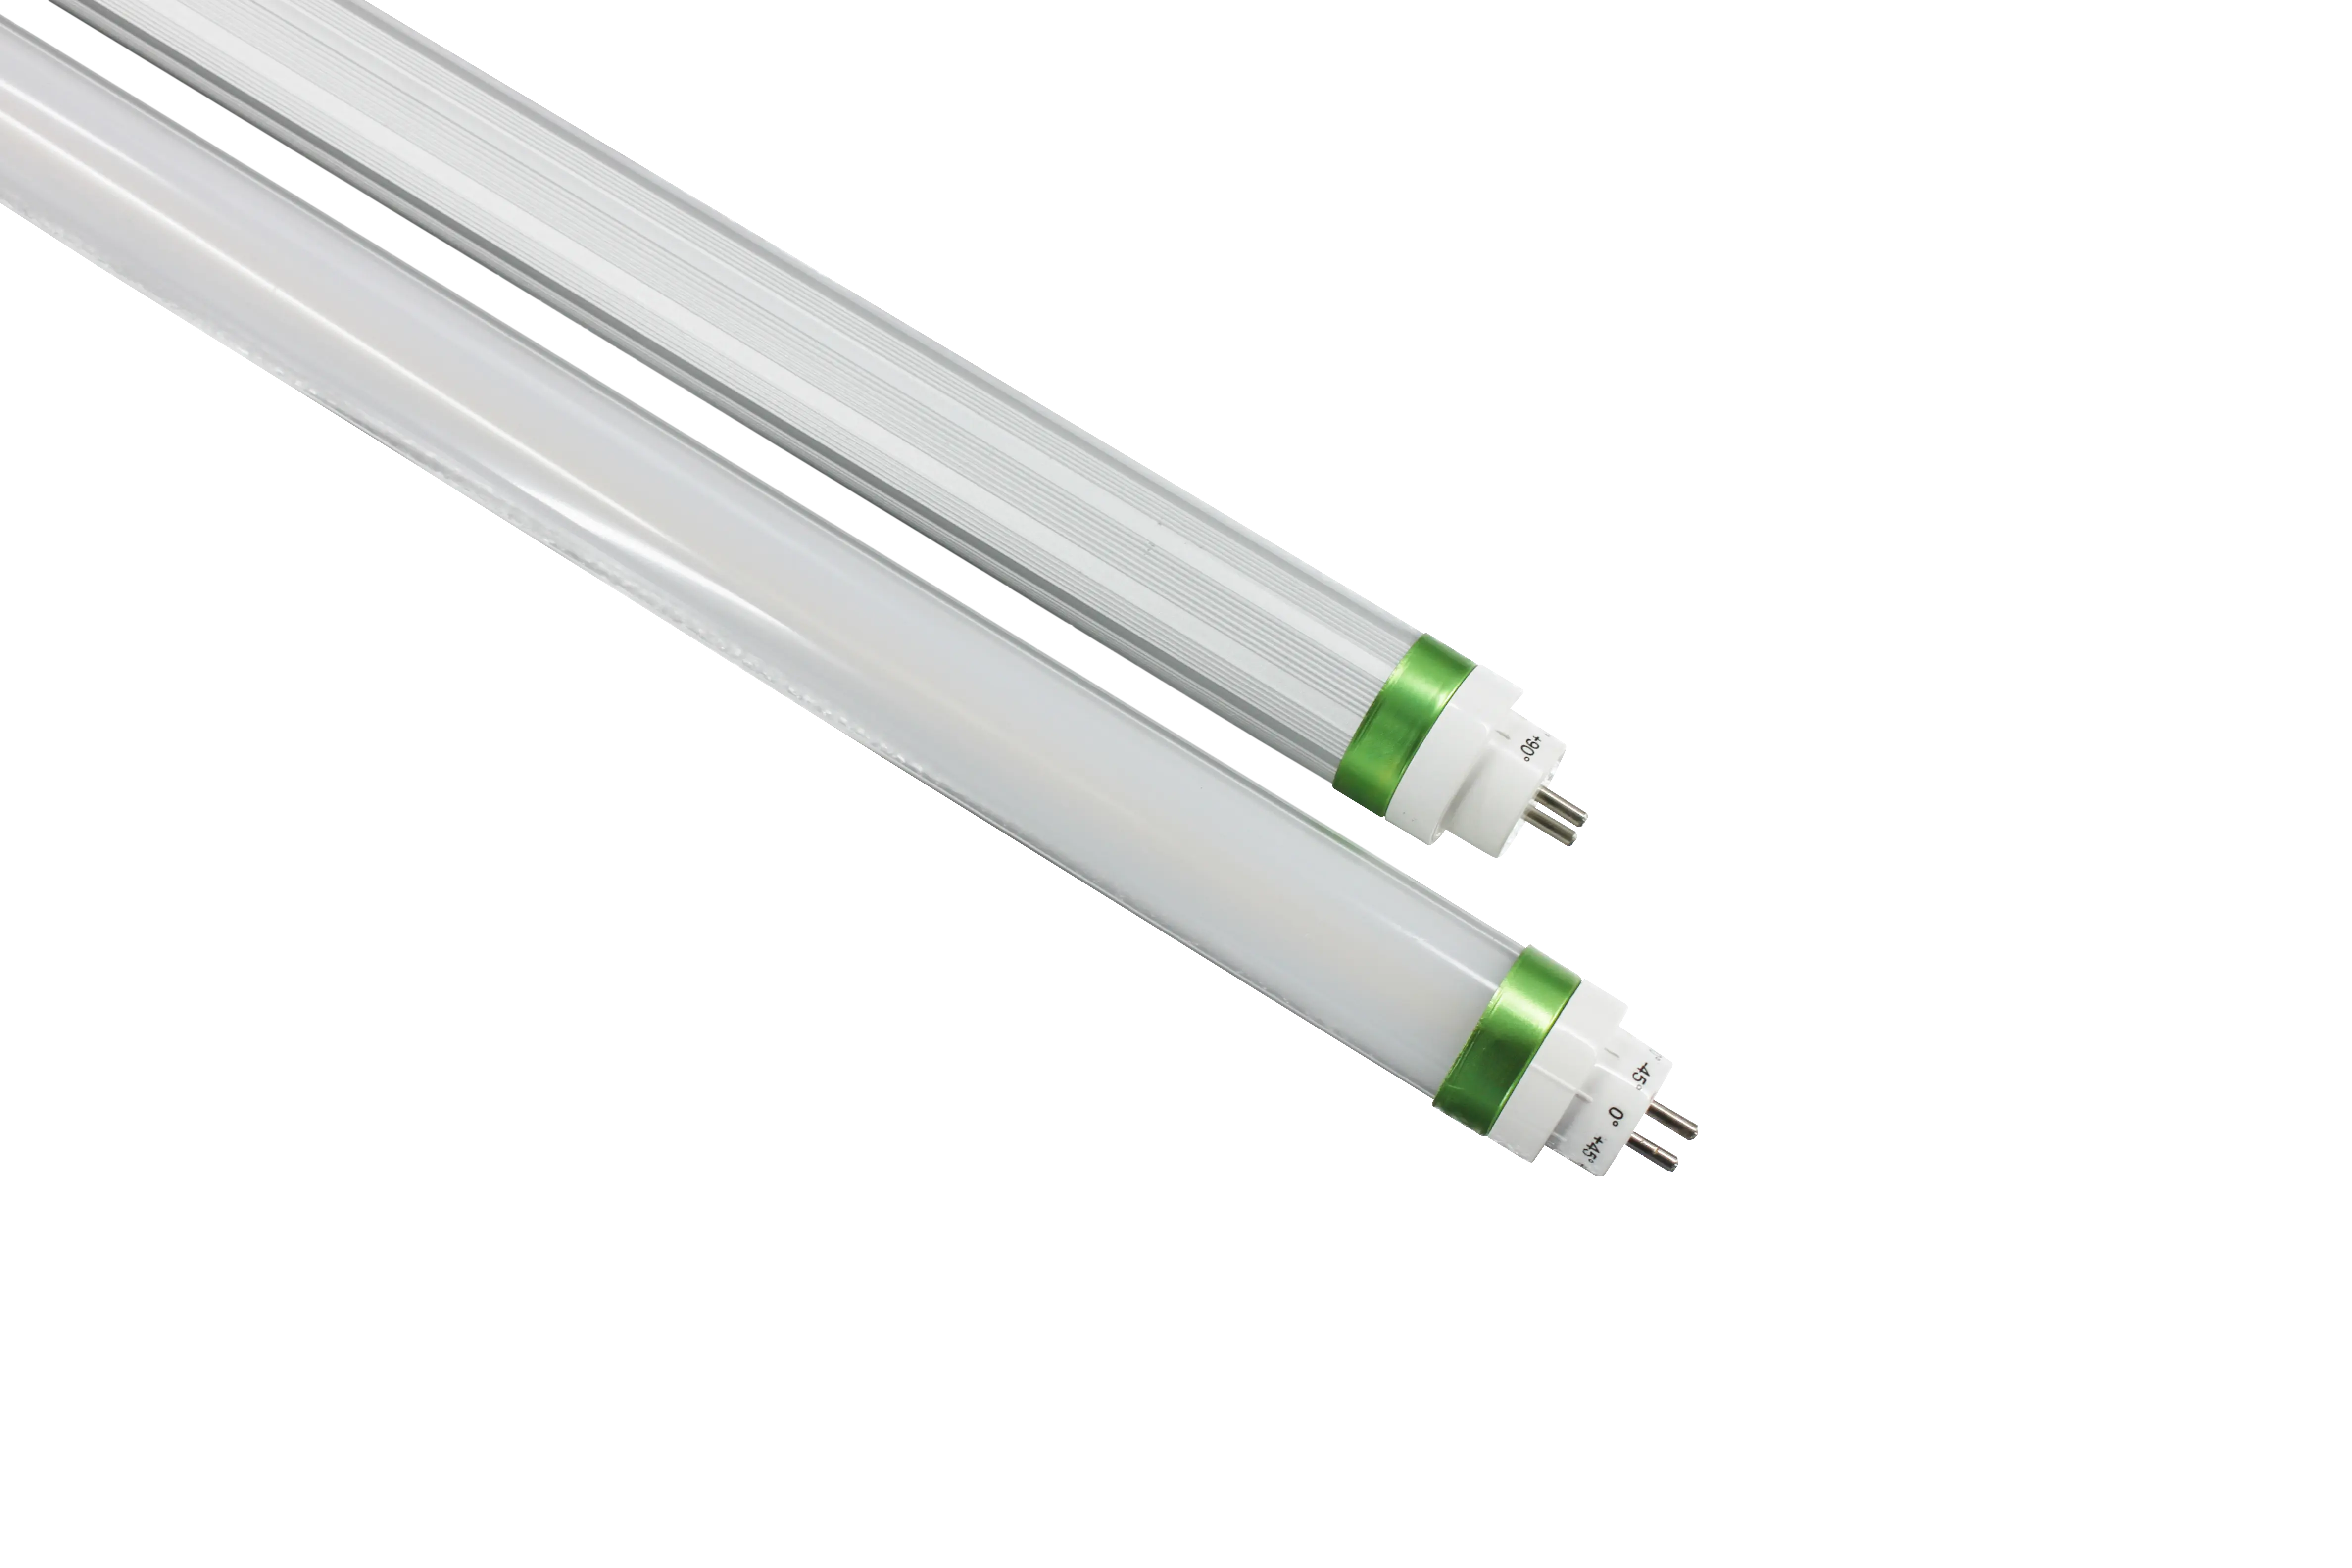 ShineLong yüksek etki led tüp 200lm/w 180lm/w 160lm/w T5 T8 led tüp floresan tüp aydınlatma boru şeklindeki ışığın değiştirilmesi